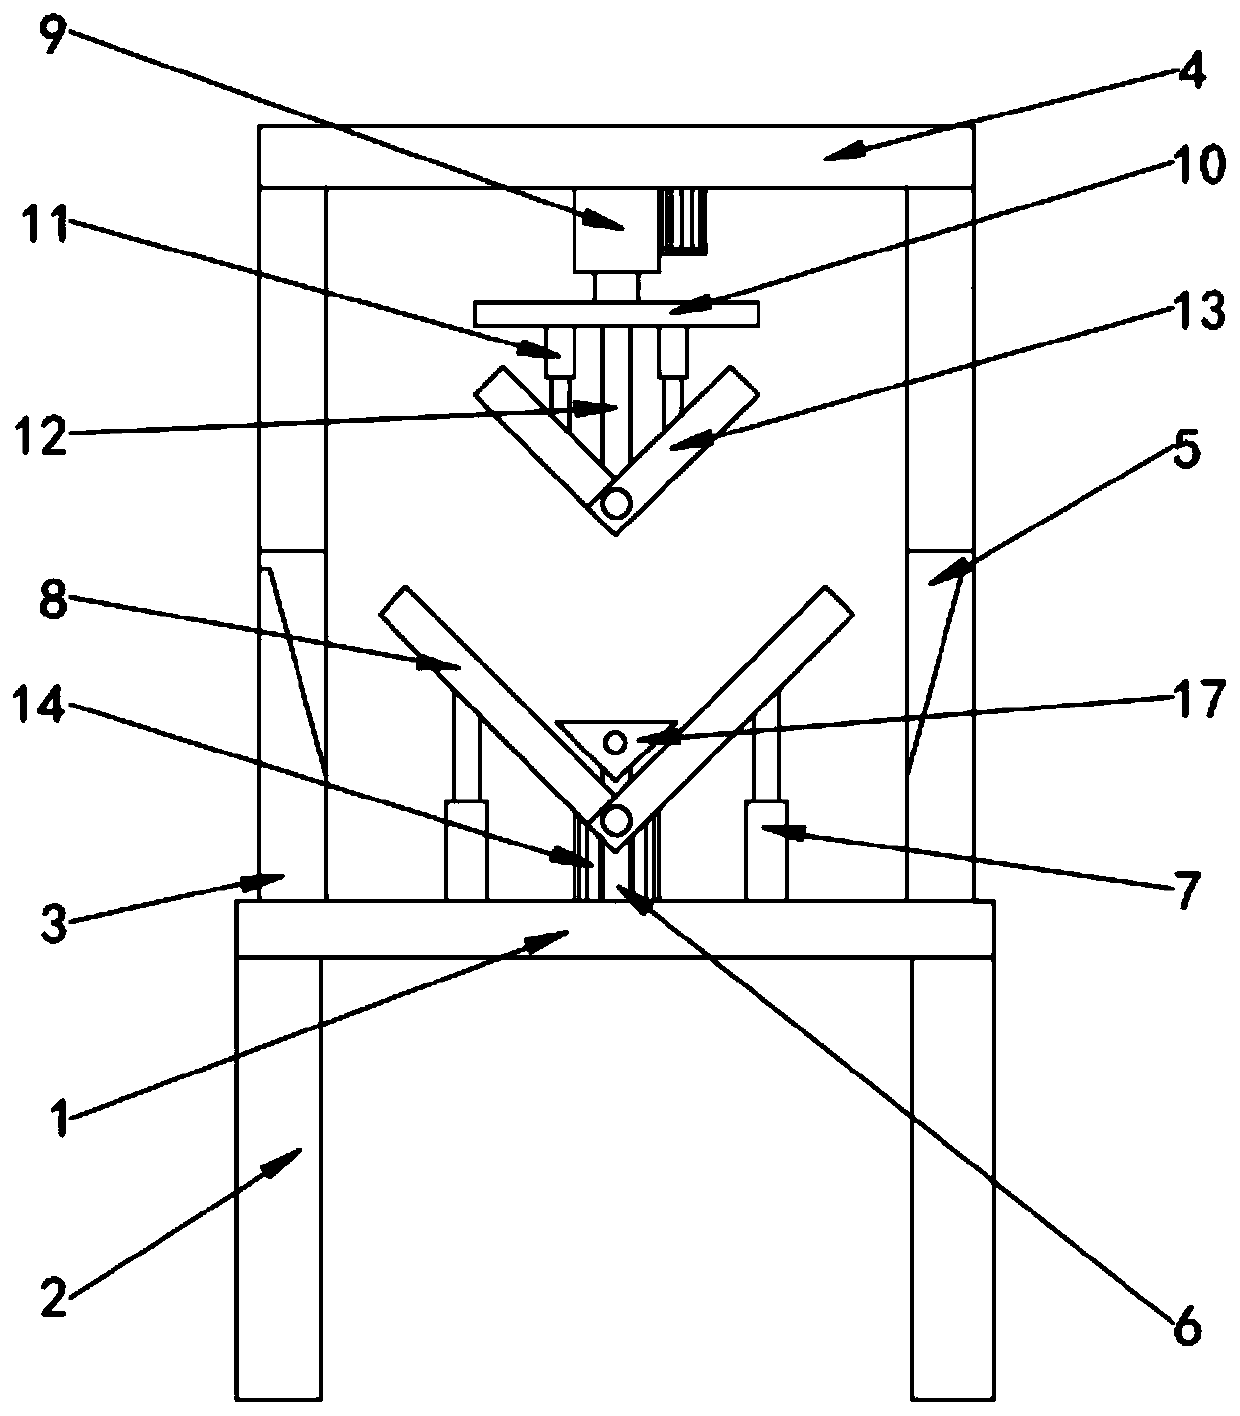 Iron sheet beveling device used for hardware machining